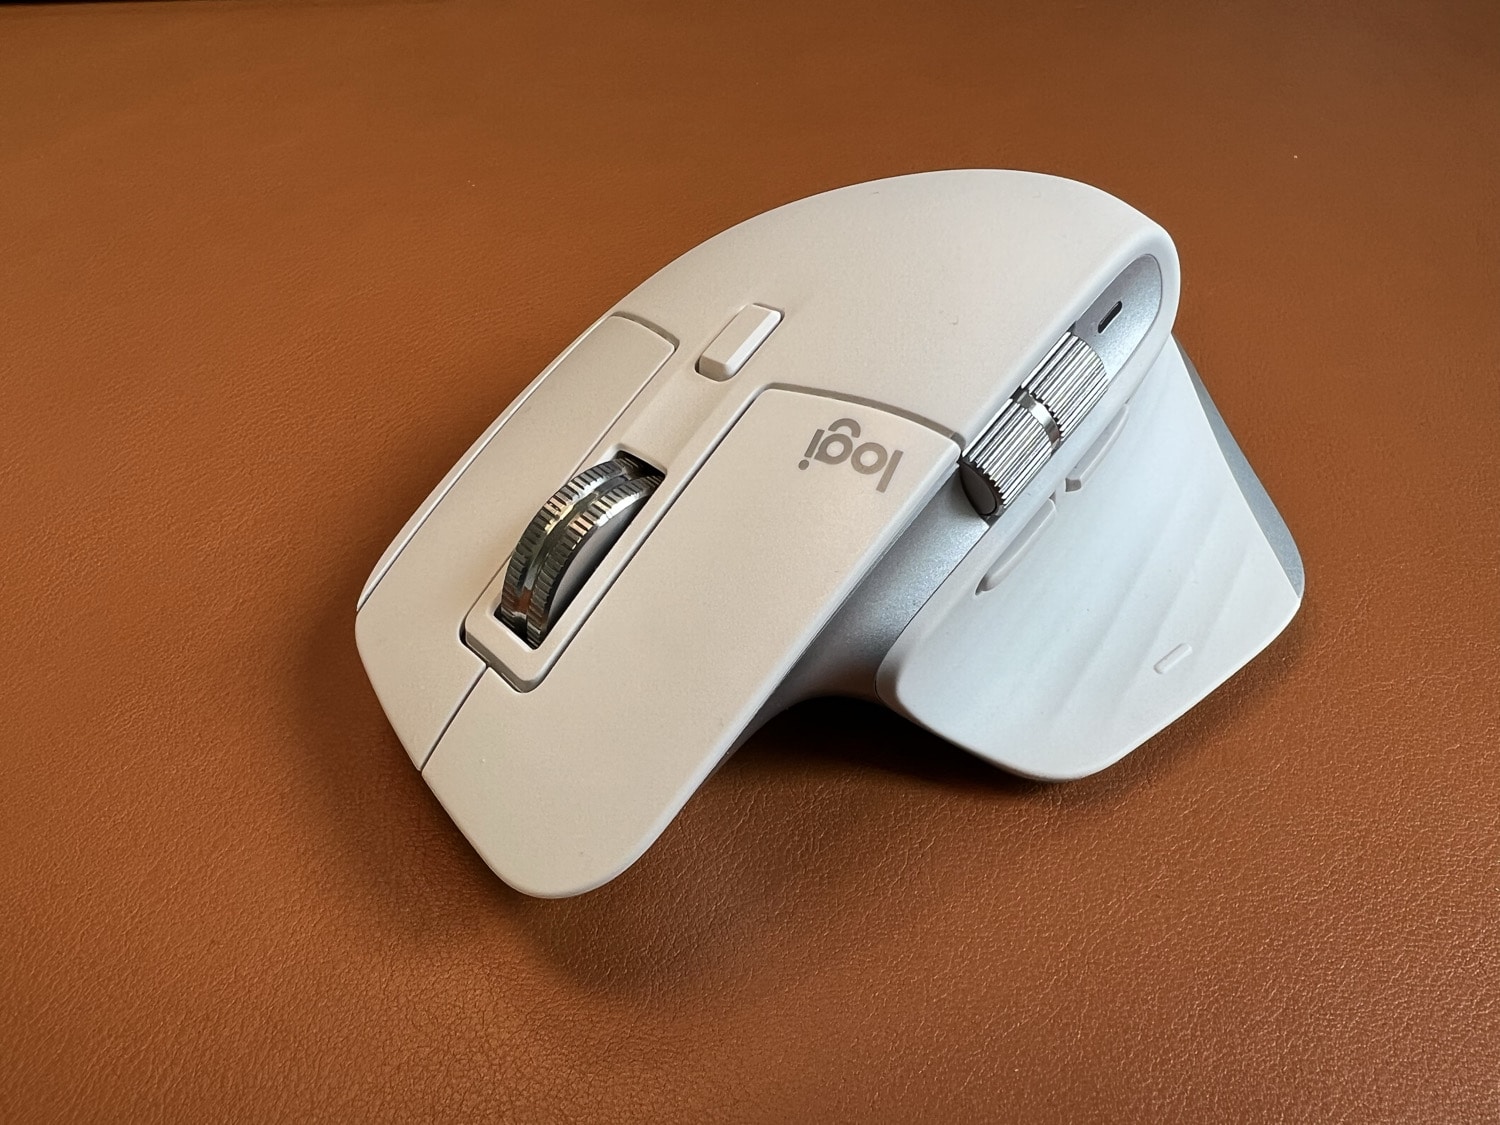 Die MX besser 3S wird leiser deutlich Master Logitech beste im Maus und noch Test: